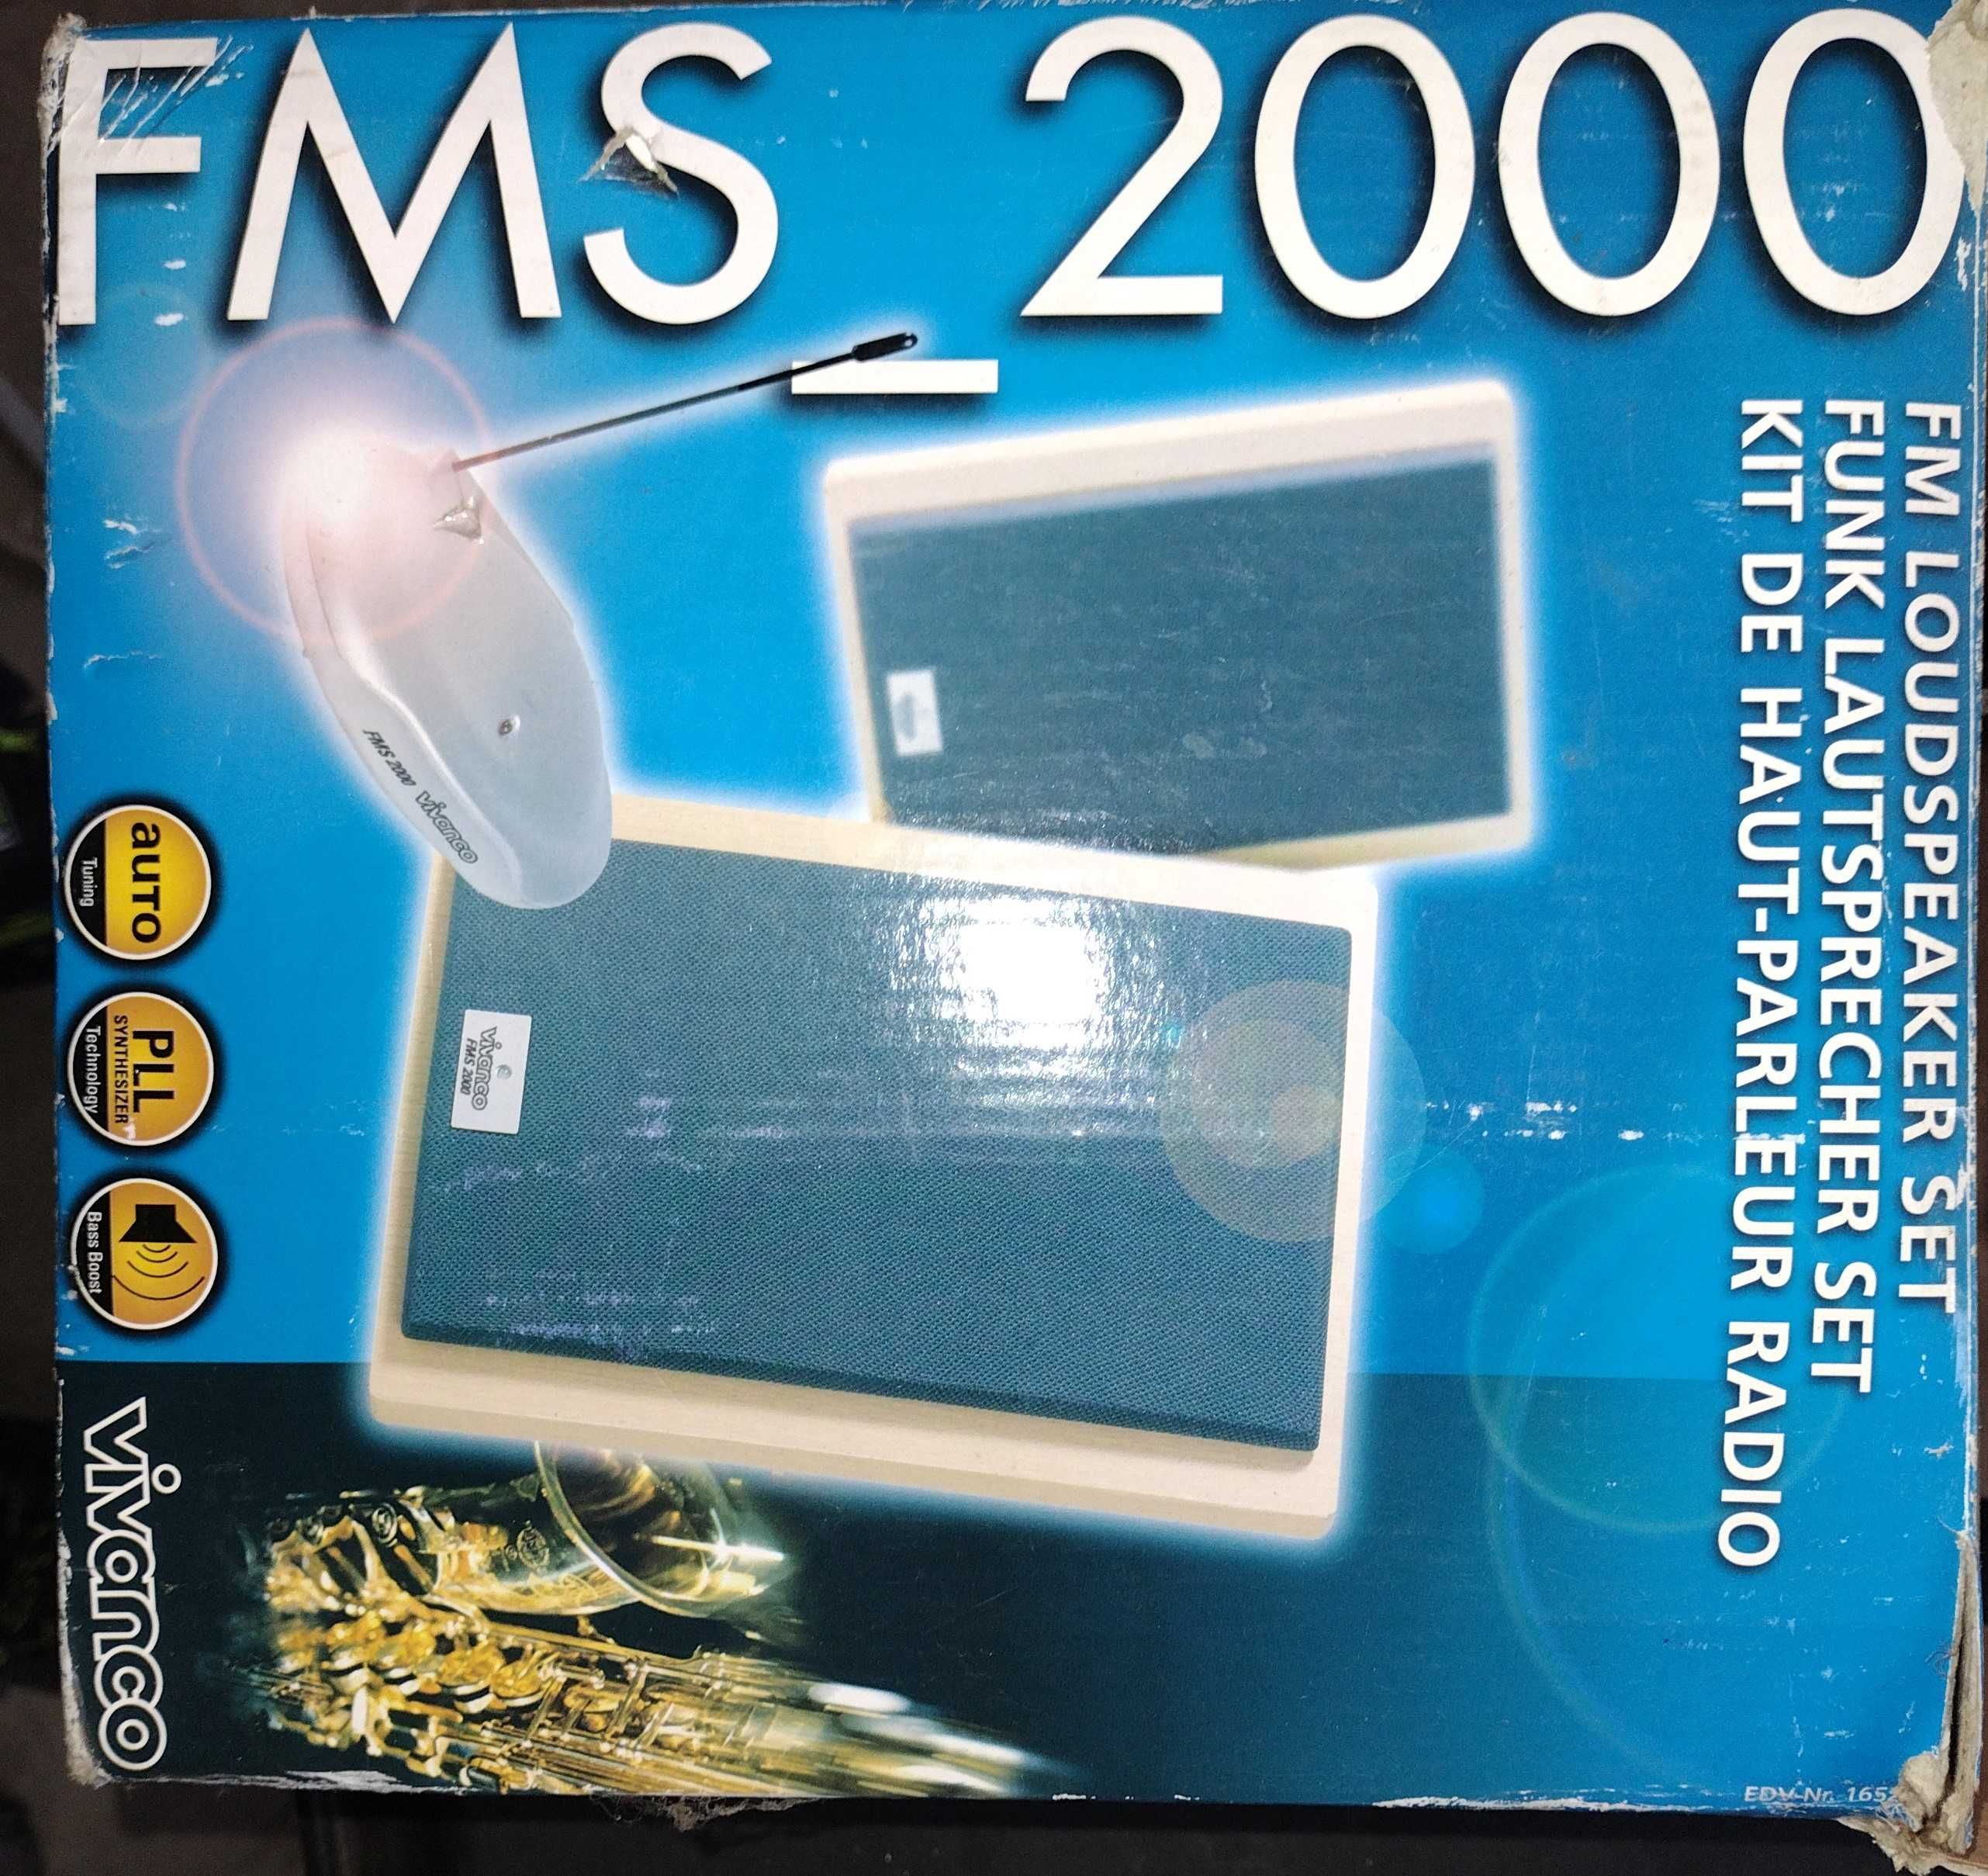 Głośniki bezprzewodowe VIVANCO FMS 2000